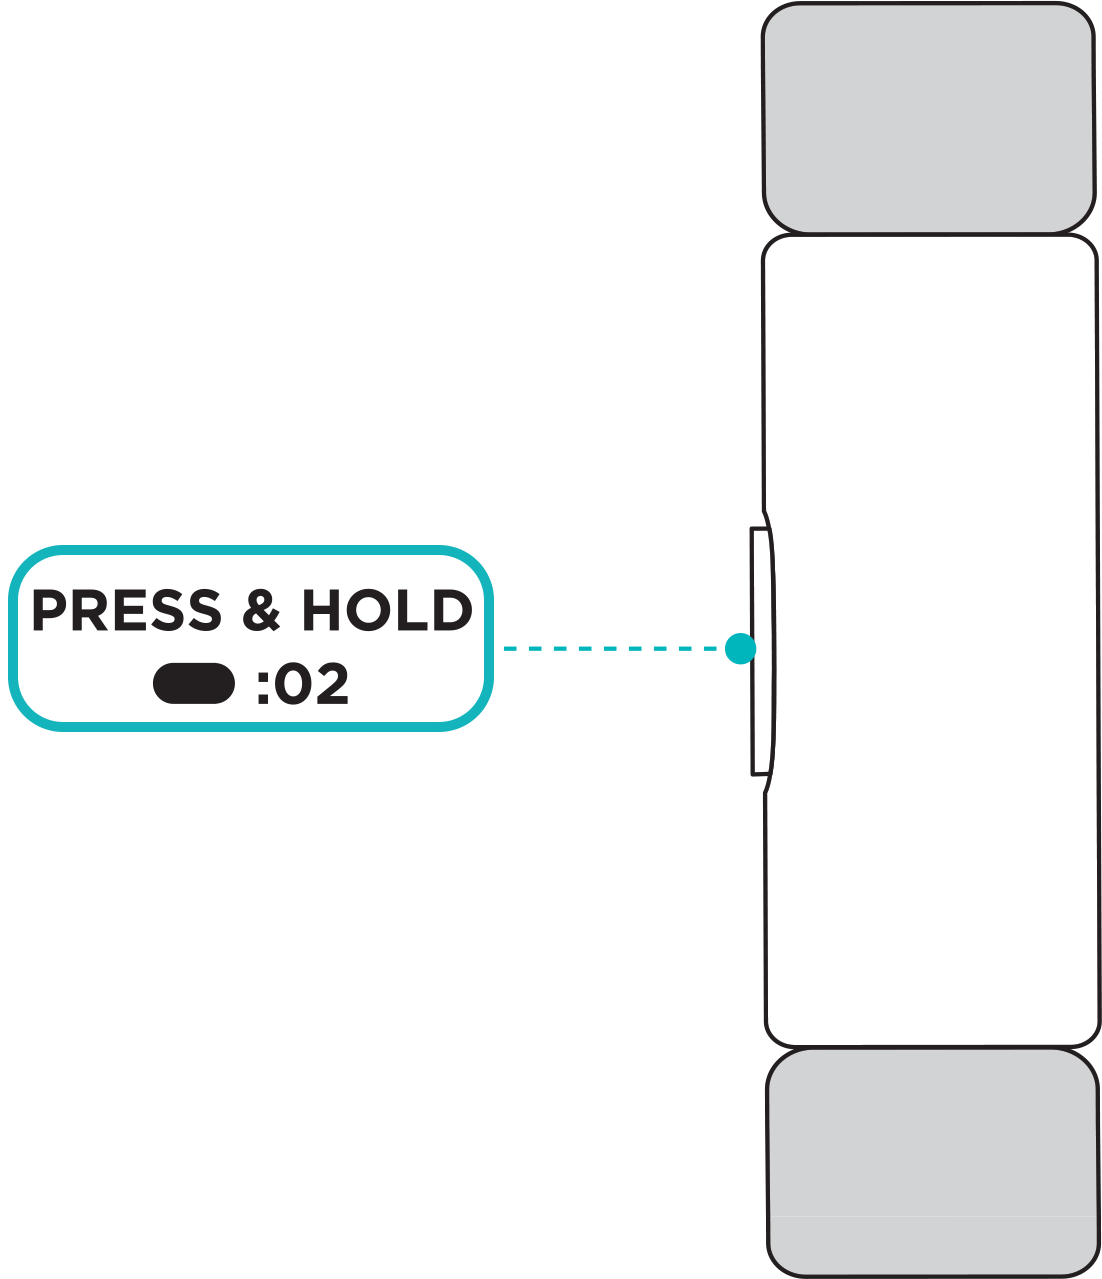 ボタンが強調表示され、ボタンを 2 秒間長押しするよう指示するテキスト付きのトラッカー